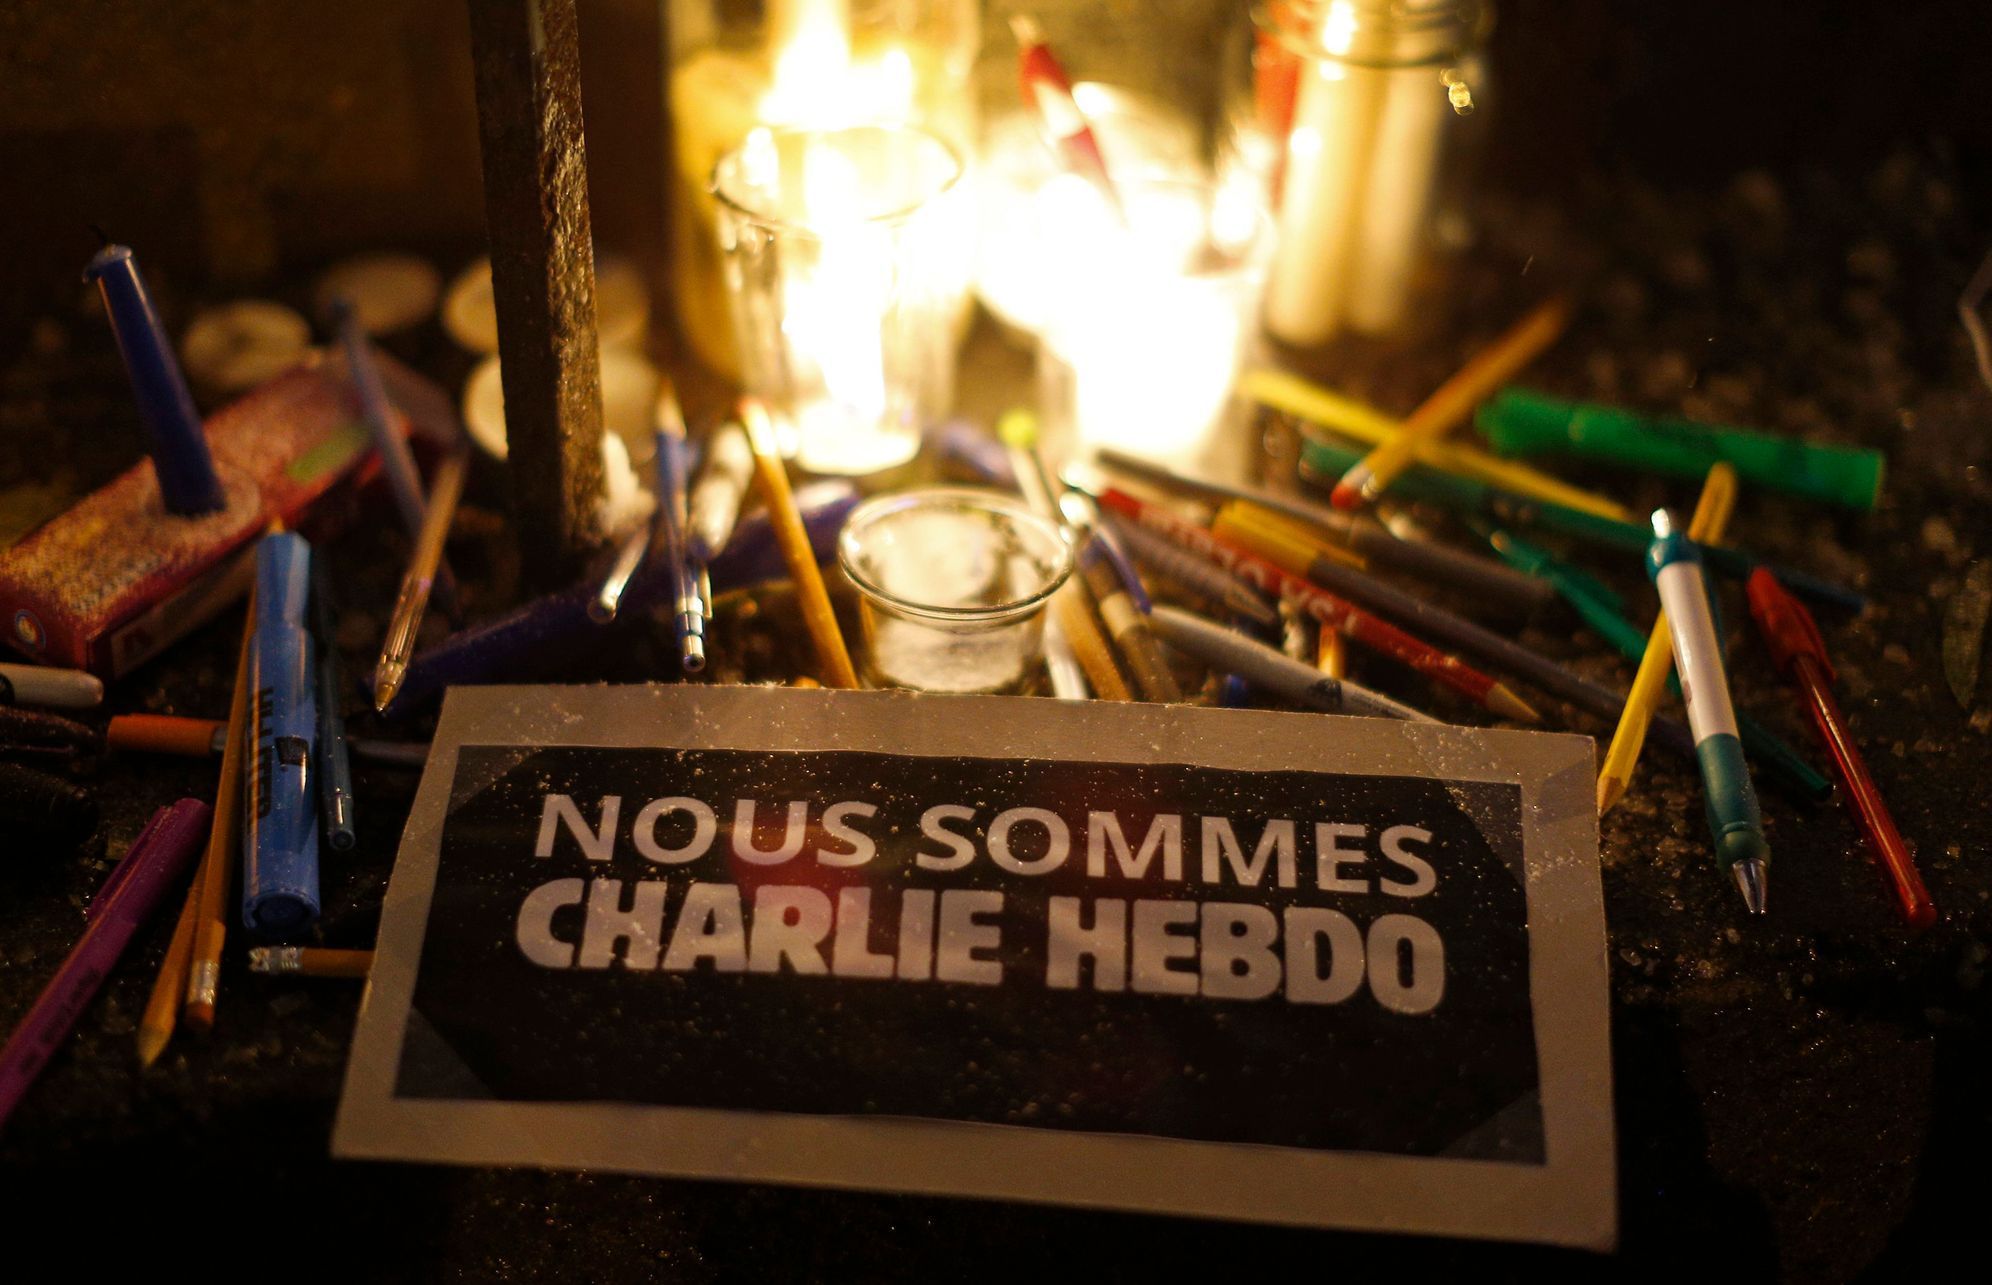 Pietní akce ve světě obětem pařížské tragédie